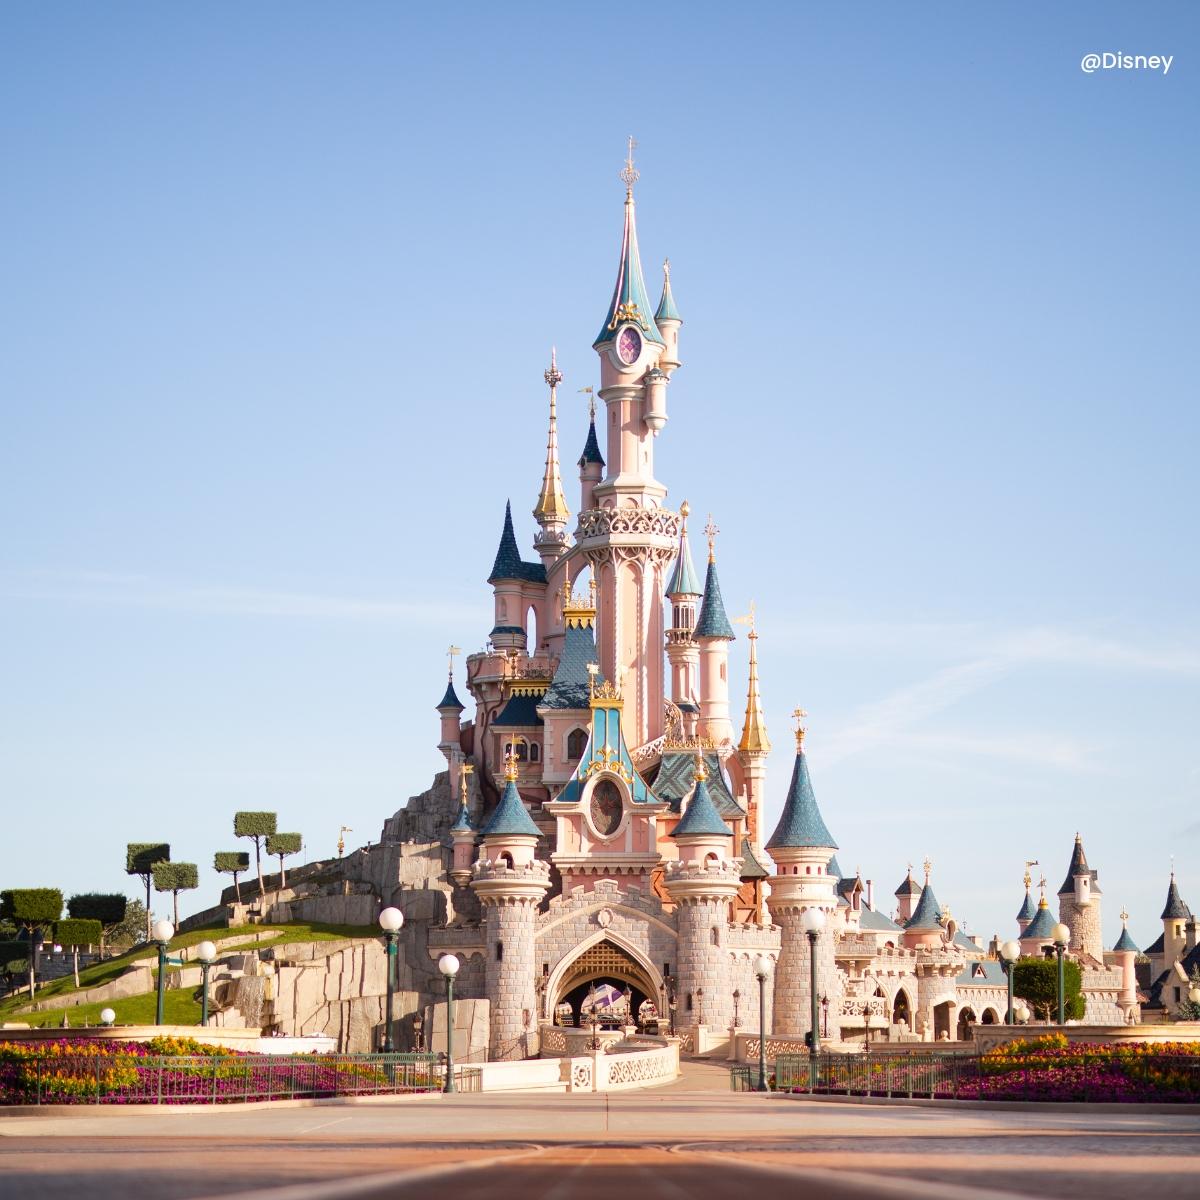 Verrijken oplichterij Vertellen Disneyland Parijs tickets online boeken - Beste prijsgarantie